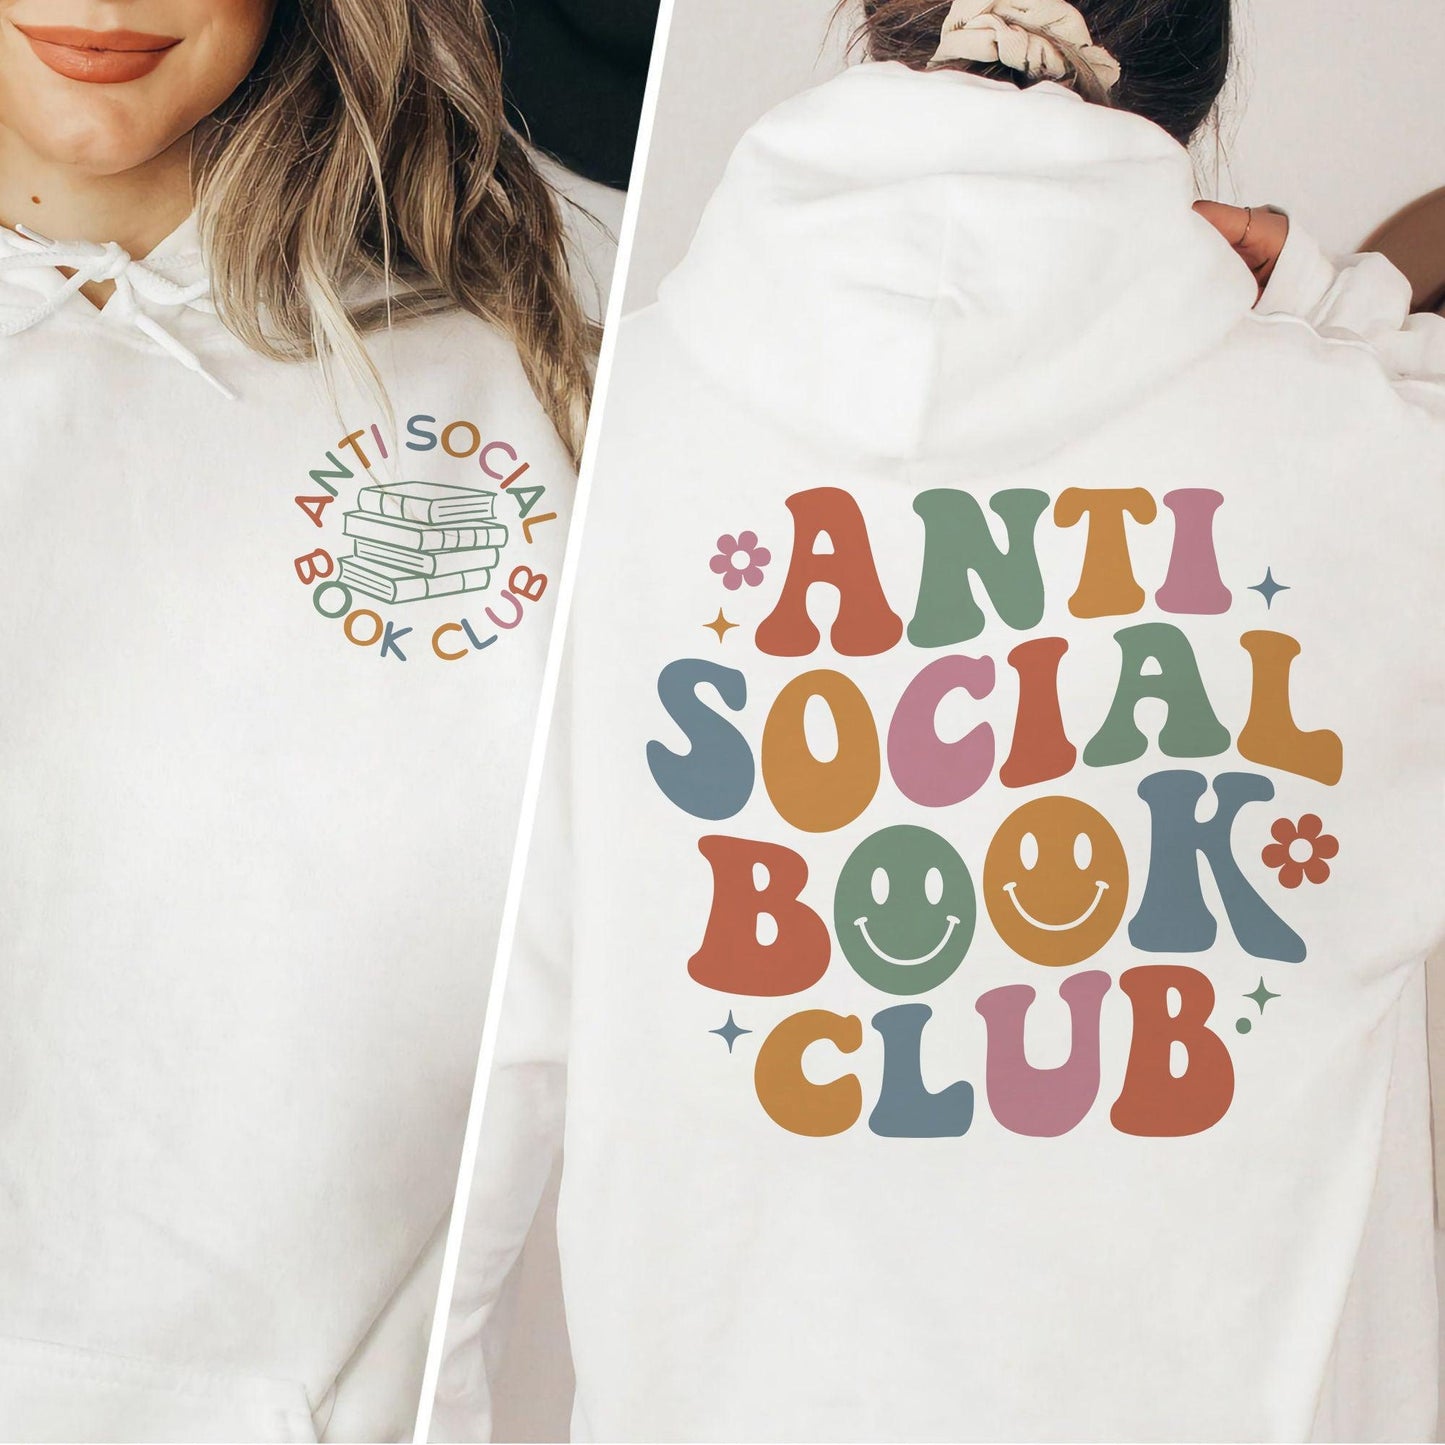 Antisozialer Buchclub Sweatshirt und Shirts - Bücherwurm Geschenk - GiftHaus